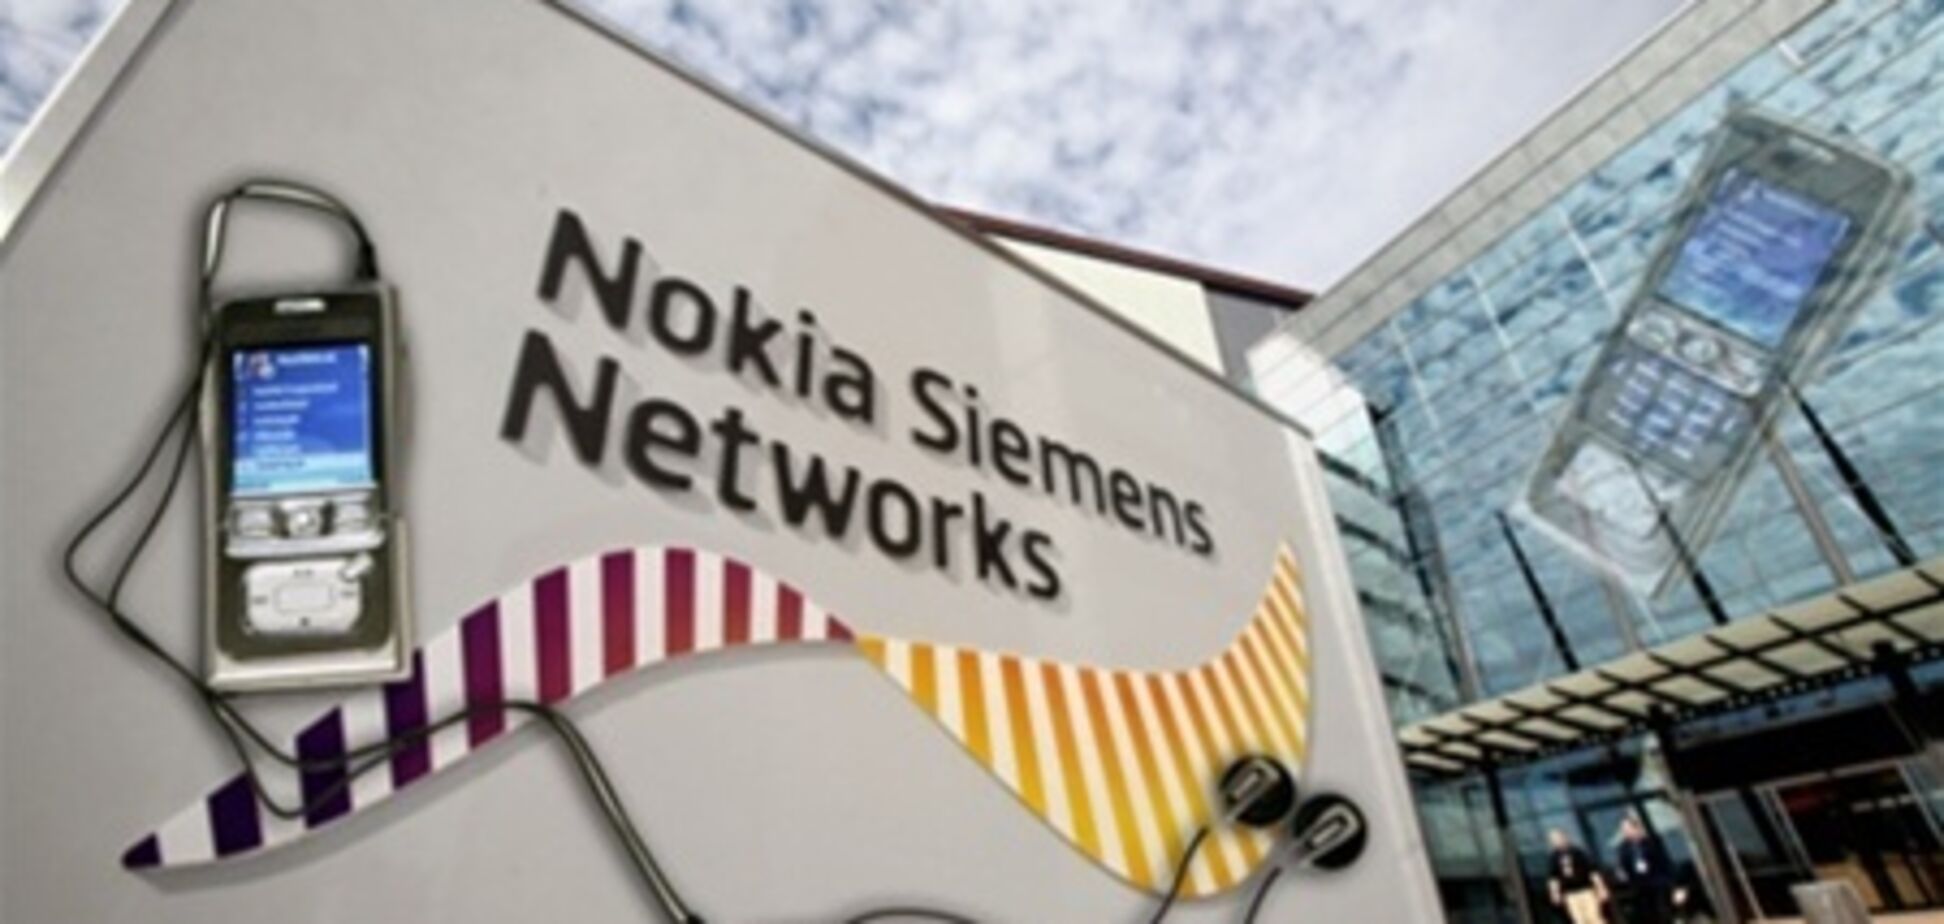 Nokia выкупит долю Siemens в NSN